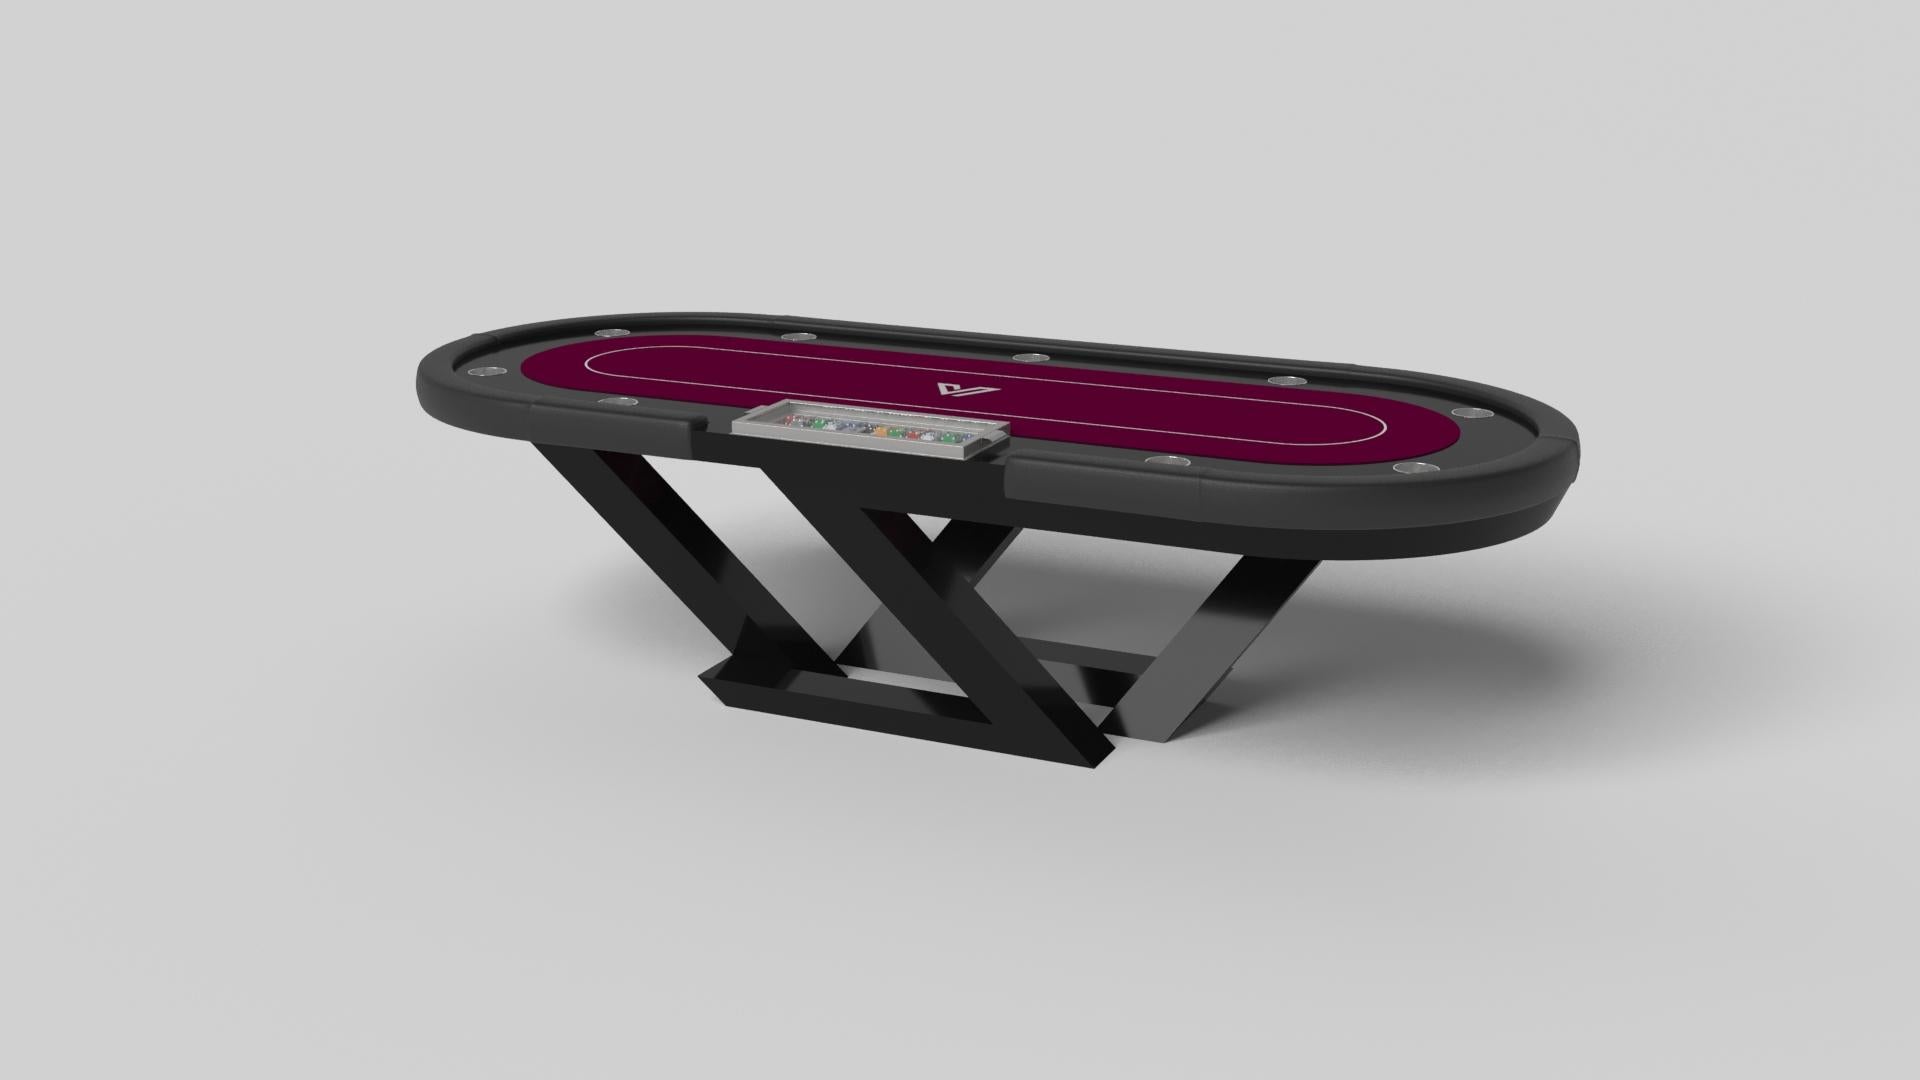 Der Pokertisch Trinity aus schwarzem Chrom mit rotem Akzent ist eine zeitgemäße Komposition aus klaren Linien und schlanken Kanten und ist ein eleganter Ausdruck modernen Designs. Dieser handgefertigte Tisch aus robustem Metall mit leuchtend roten